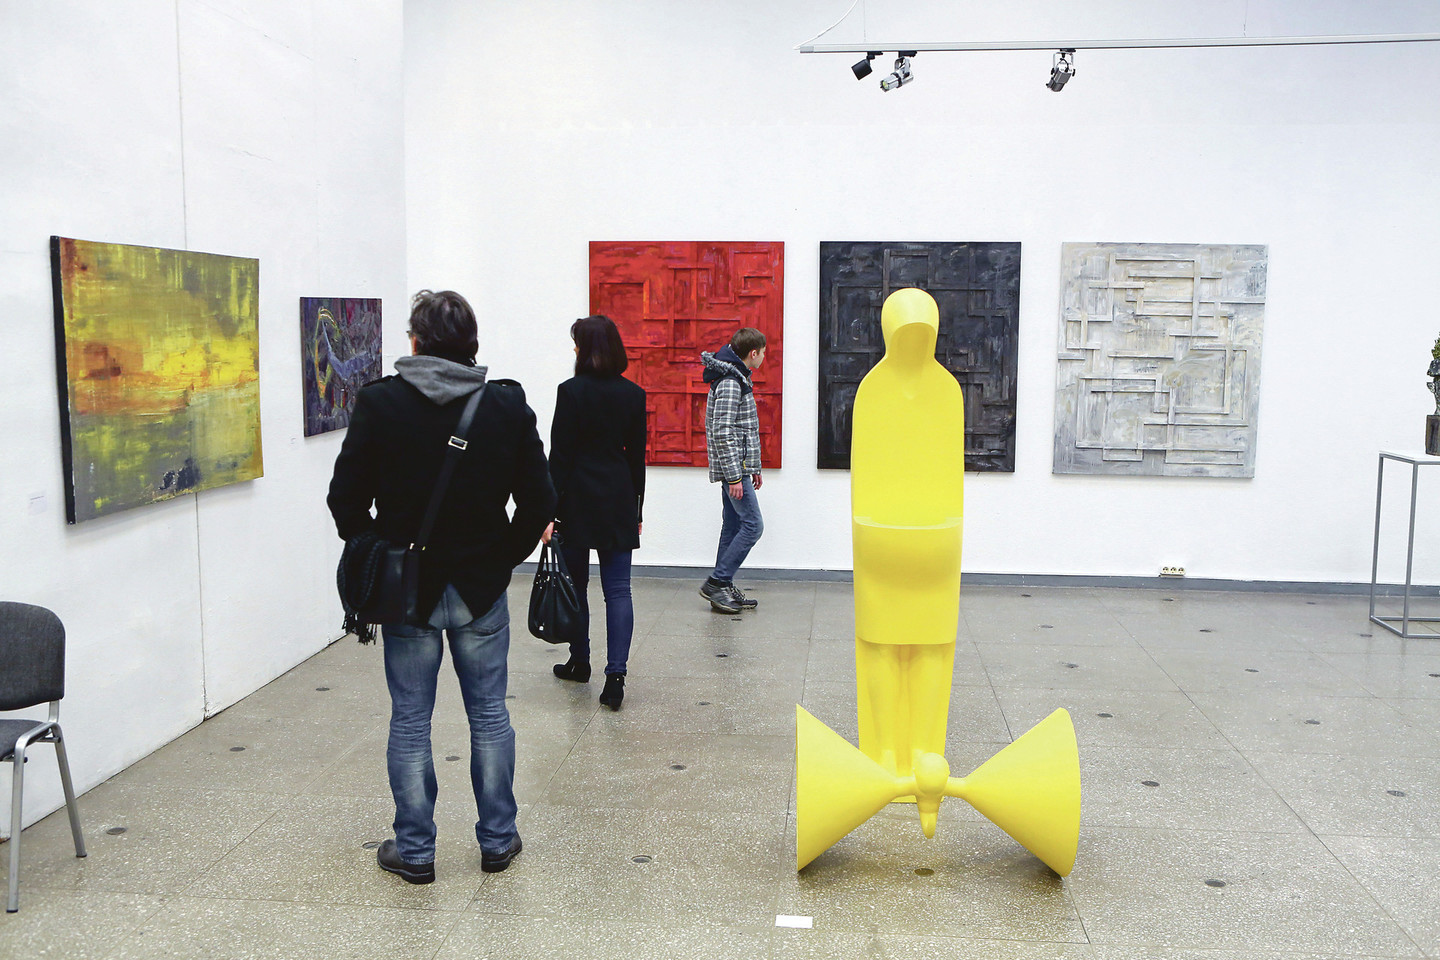 Publika plūsta apžiūrėti parodos „Geriausias metų kūrinys“. Joje pristatoma 111 įvairaus žanro kūrinių. Tarp jų ir skulptoriaus A.Šlapiko geltonas kūrinys „Ryšys“.